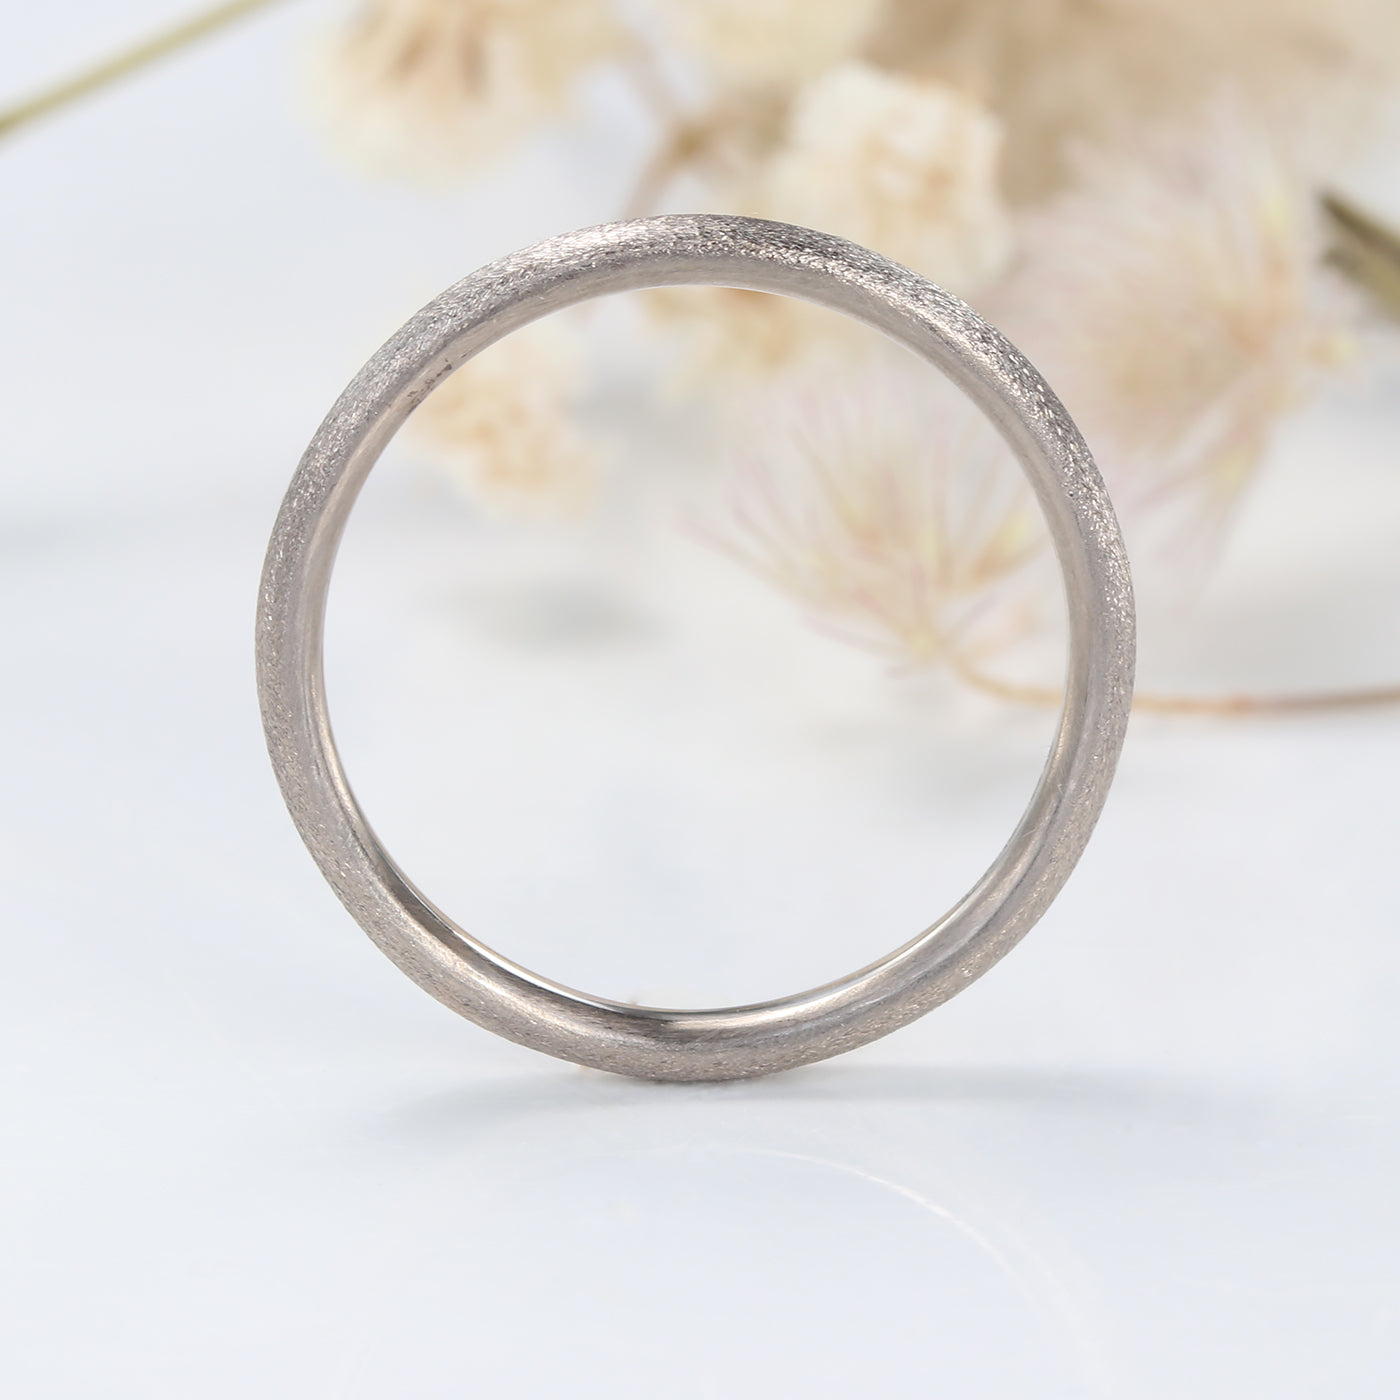 2mm White Gold Spun Silk Comfort Fit Wedding Ring (Size J, Resize G-J 1/2)